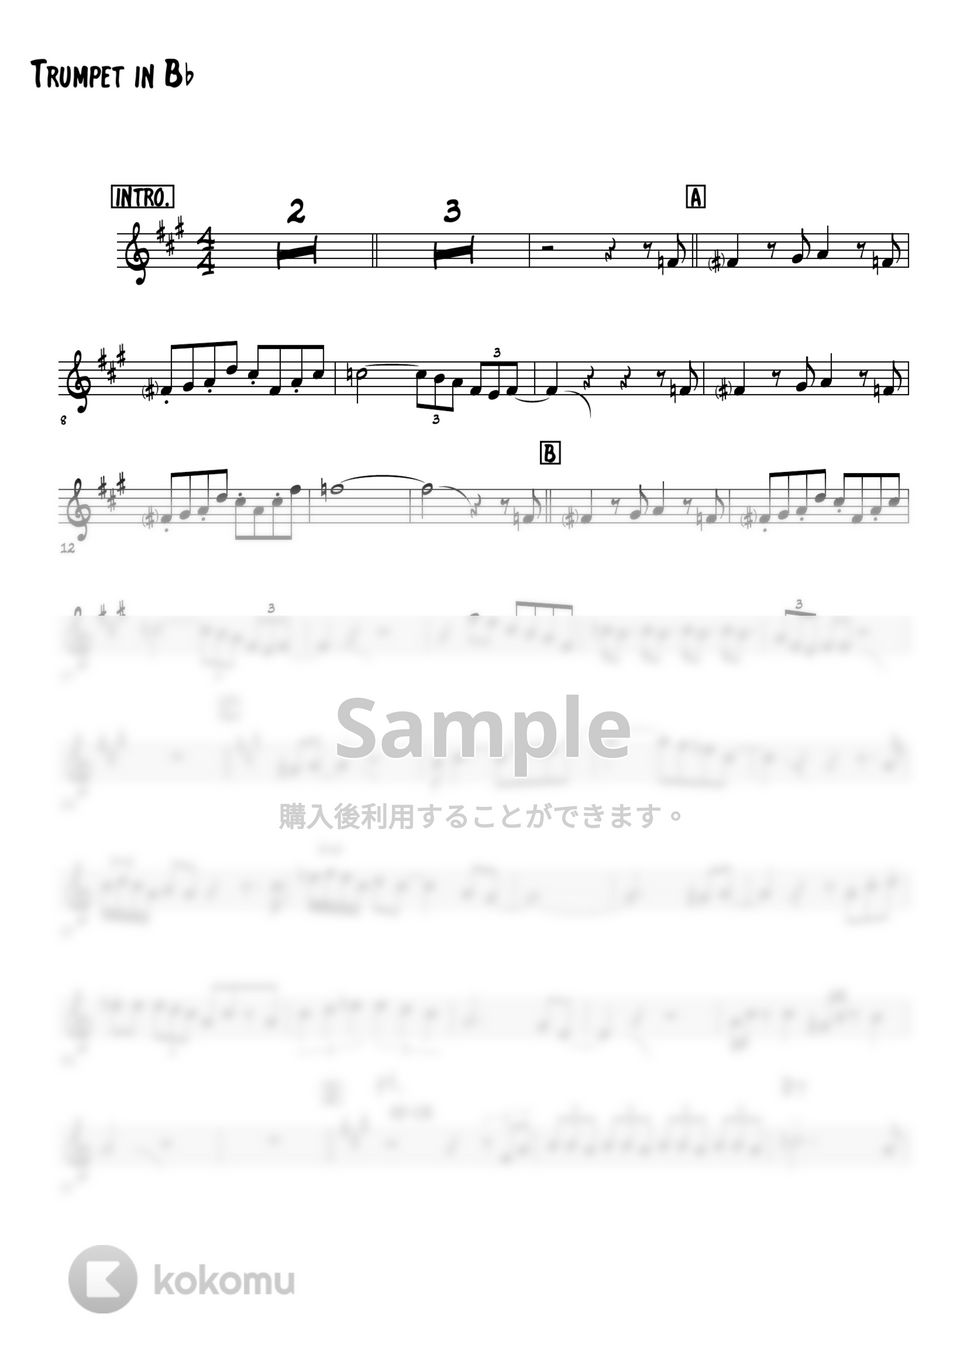 ピンクパンサー - The Pink Panther Theme (トランペット演奏例) by 高田将利